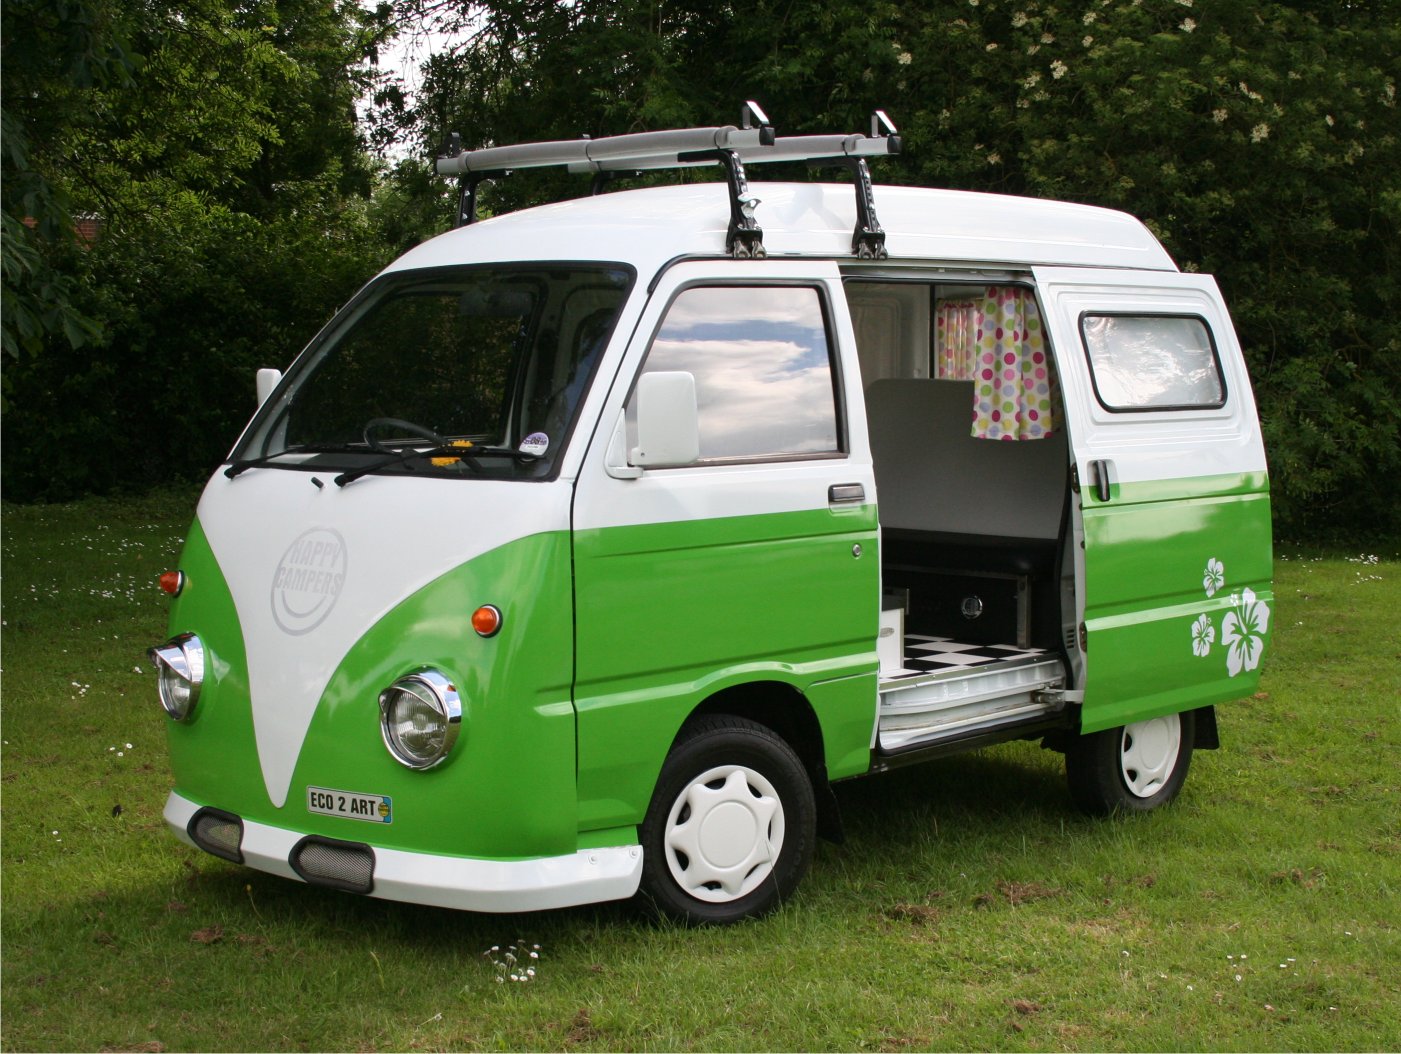 daihatsu camper vans for sale uk